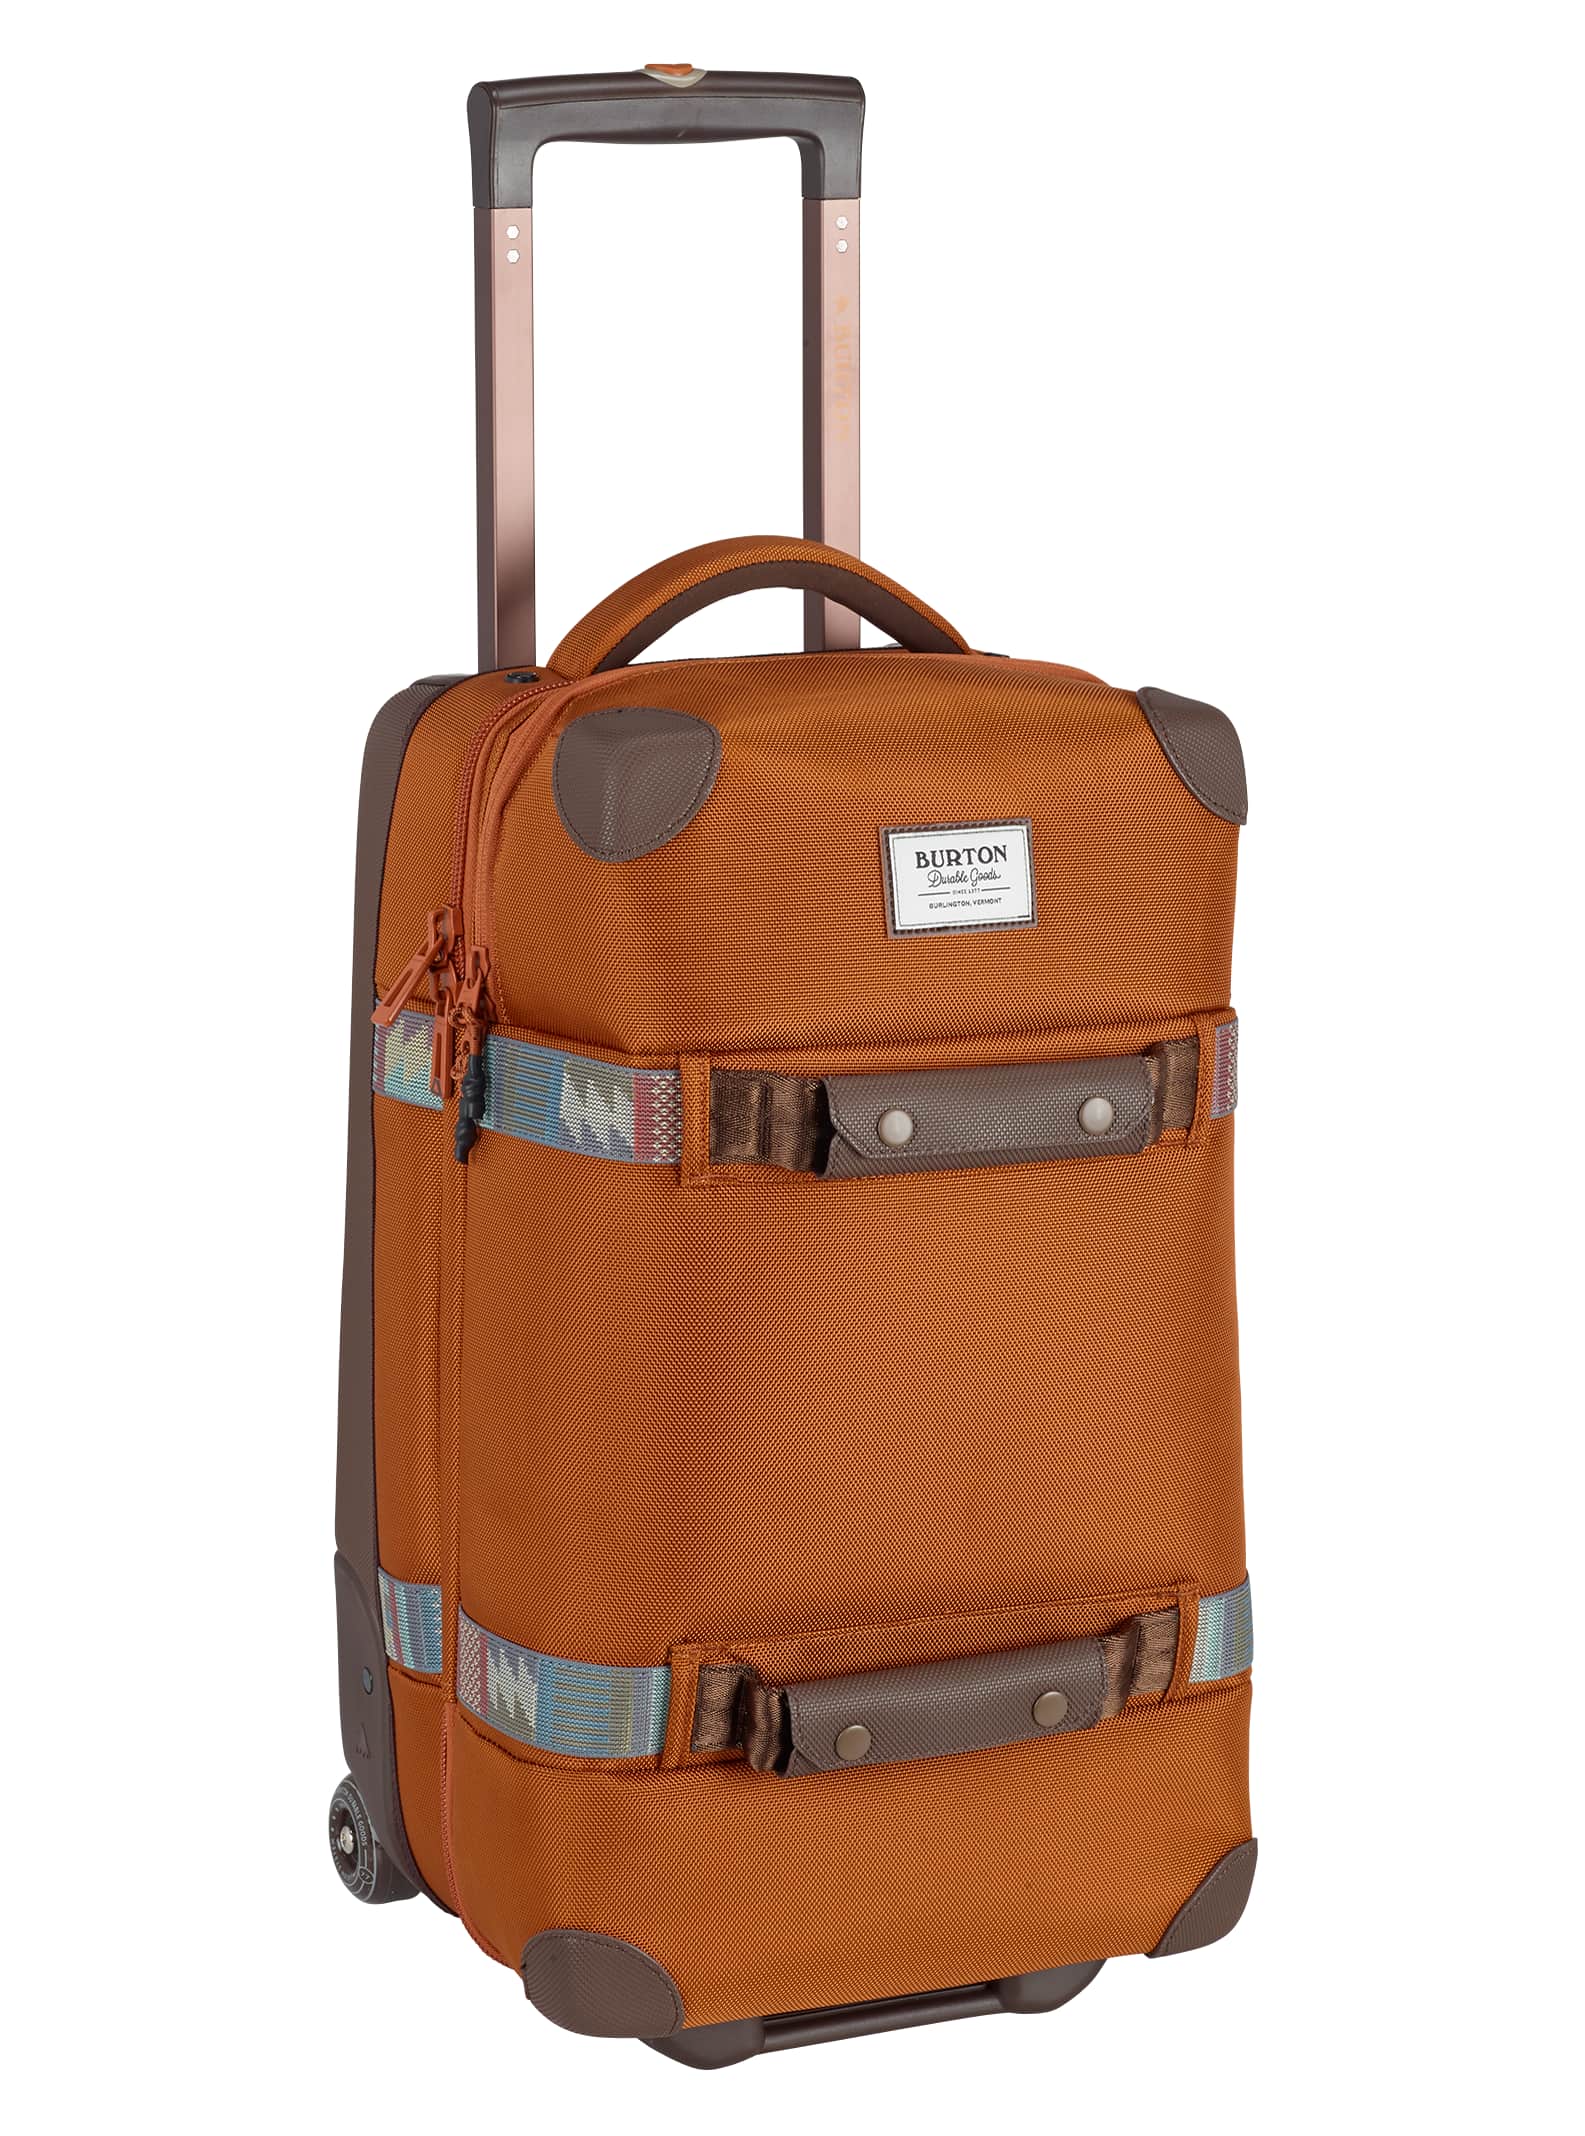 Burton / Wheelie Flight Deck Travel Bag